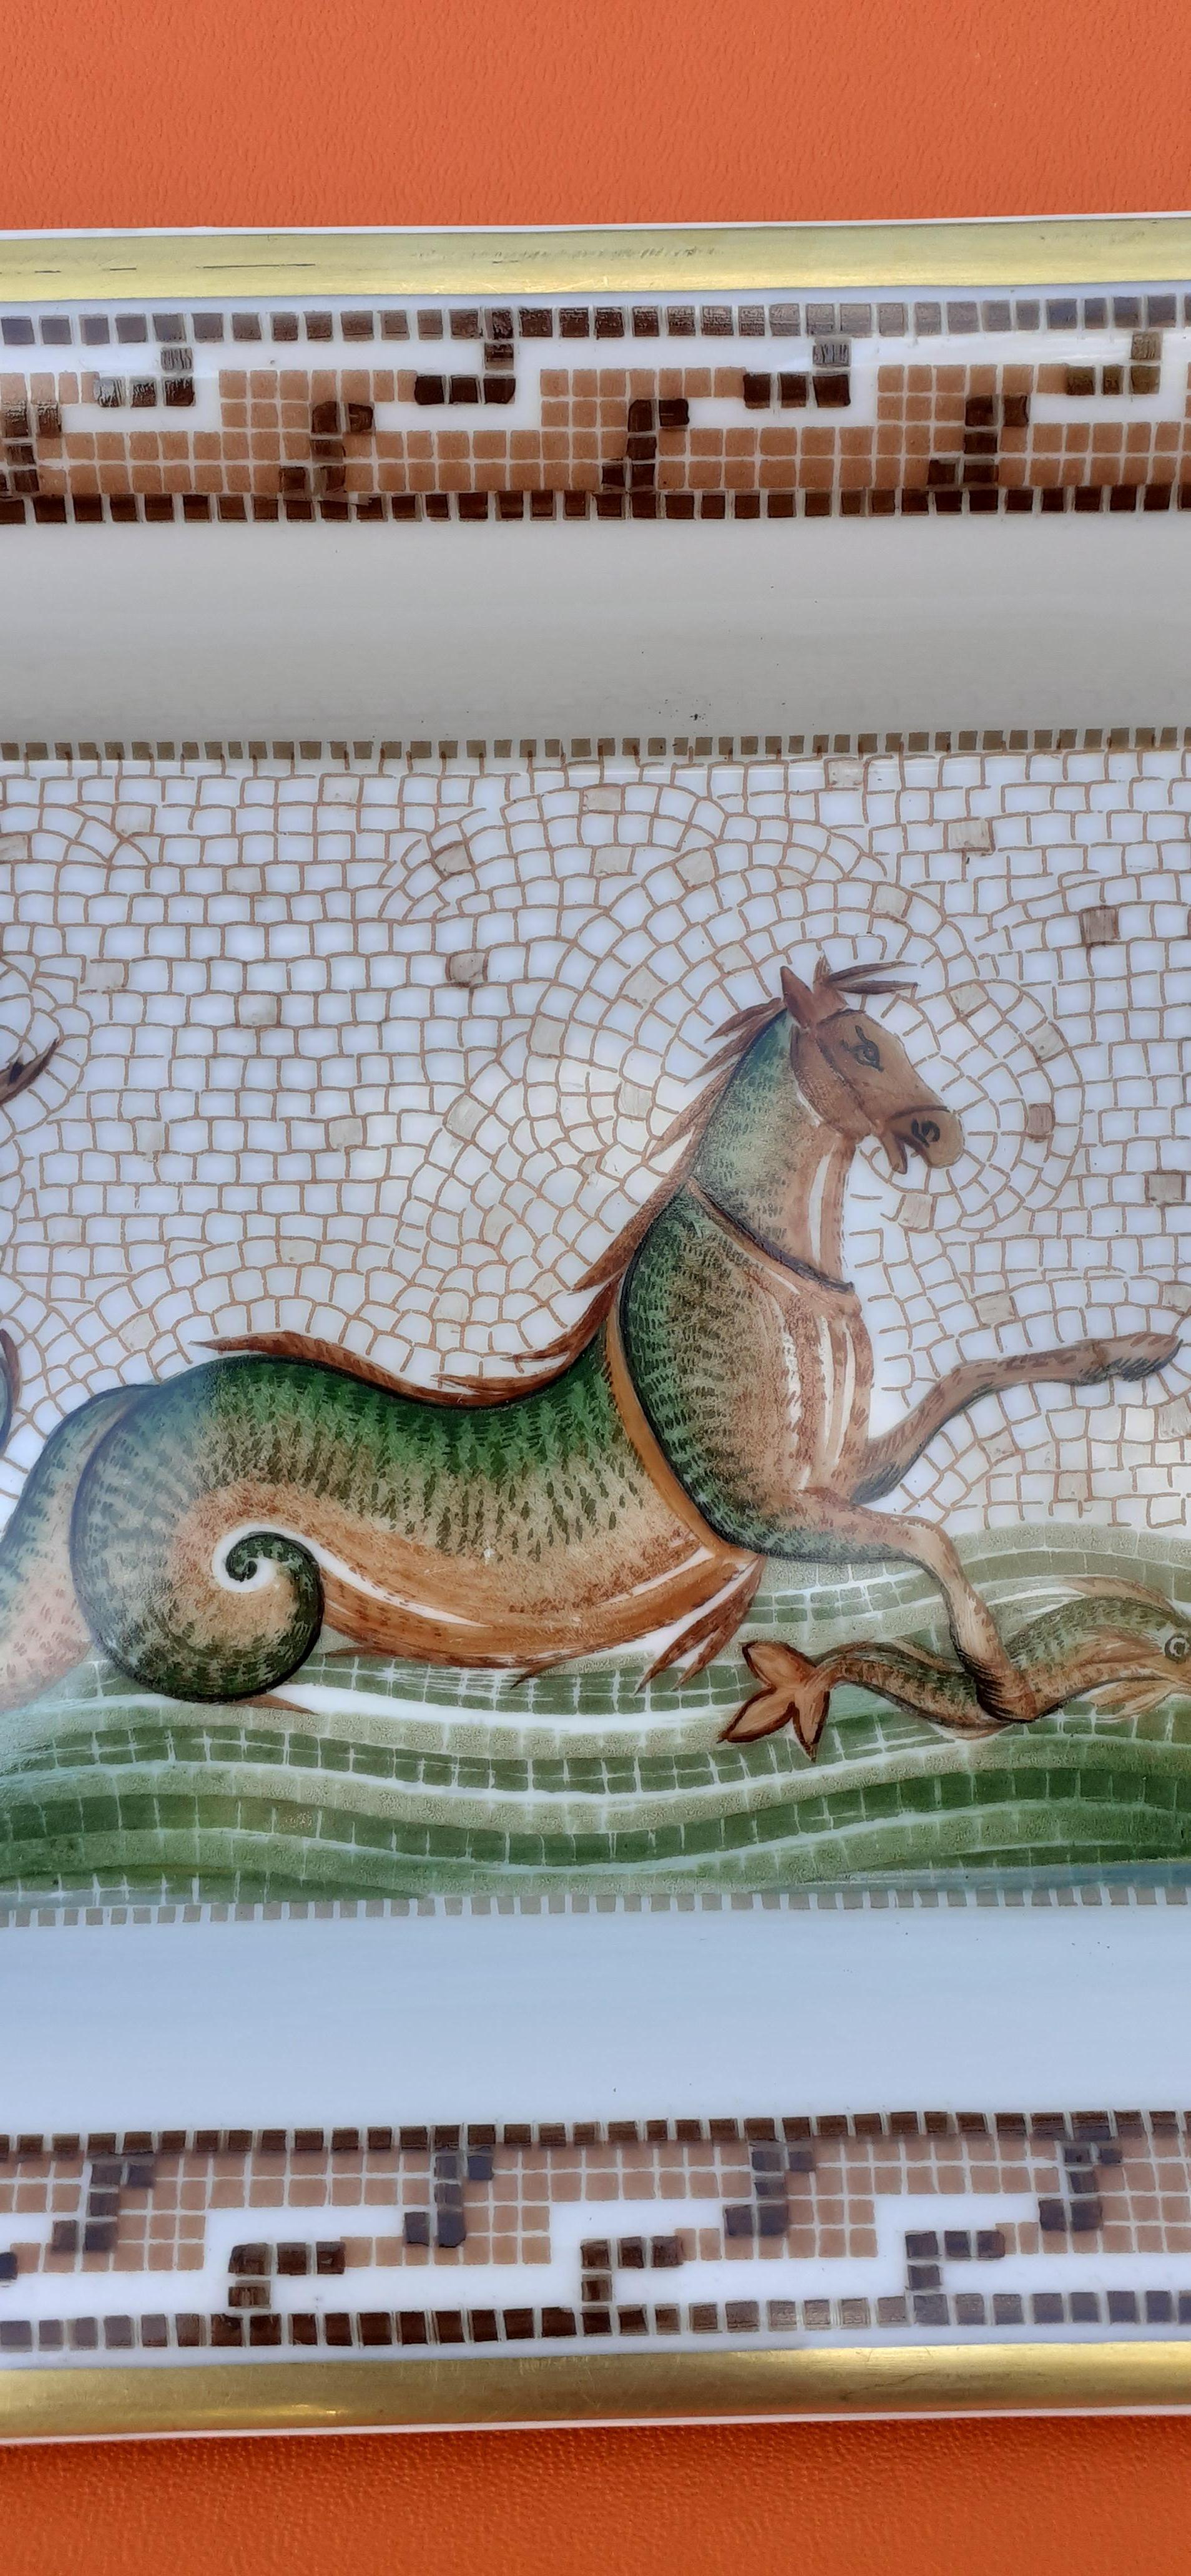 seahorse myths